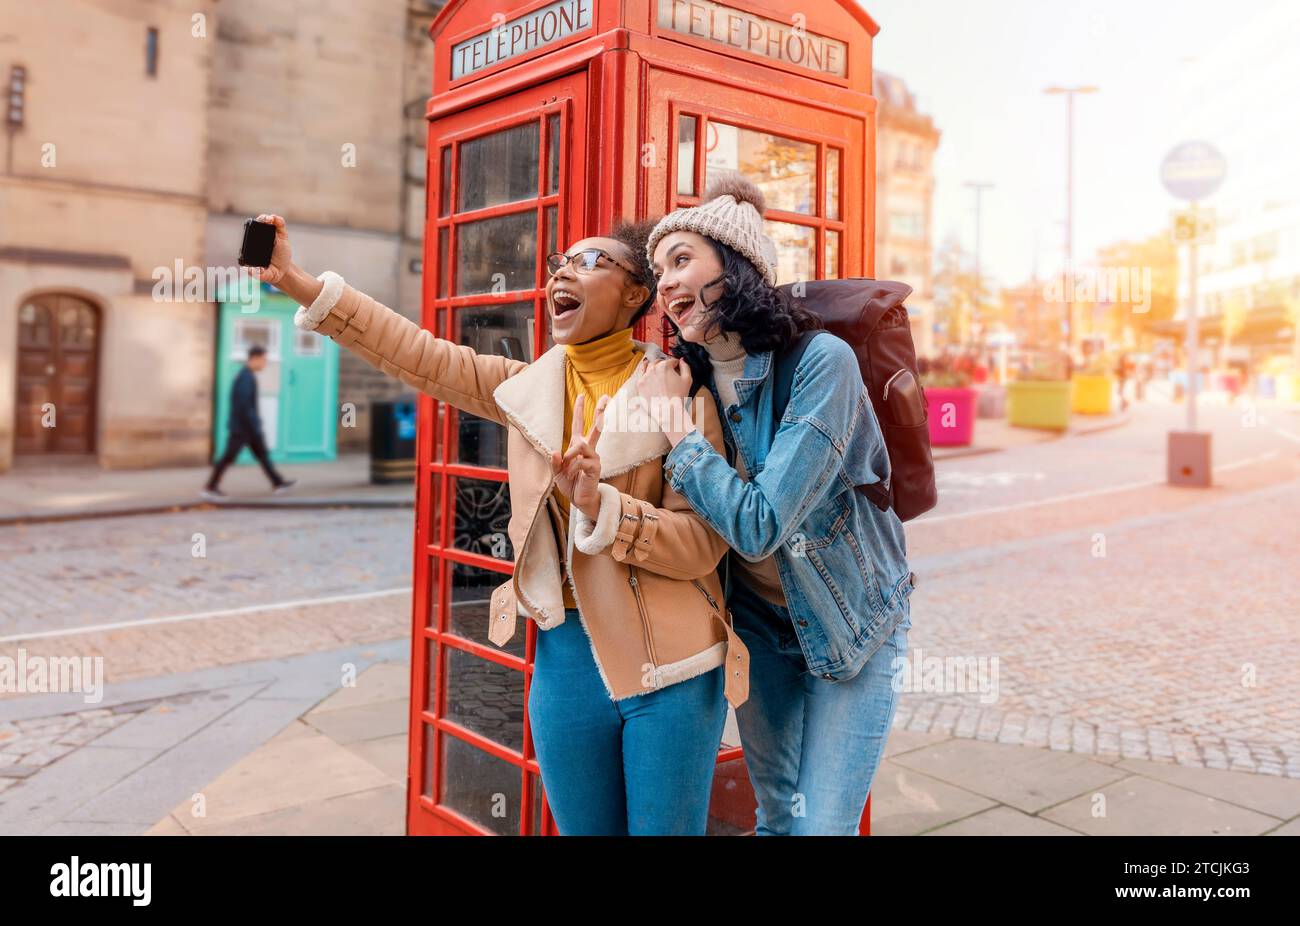 Due amici, fidanzata e donne che usano un telefono cellulare, una fotocamera e scattano selfie contro un telefono rosso nella città dell'Inghilterra.concetto Travel Lifestyle Foto Stock